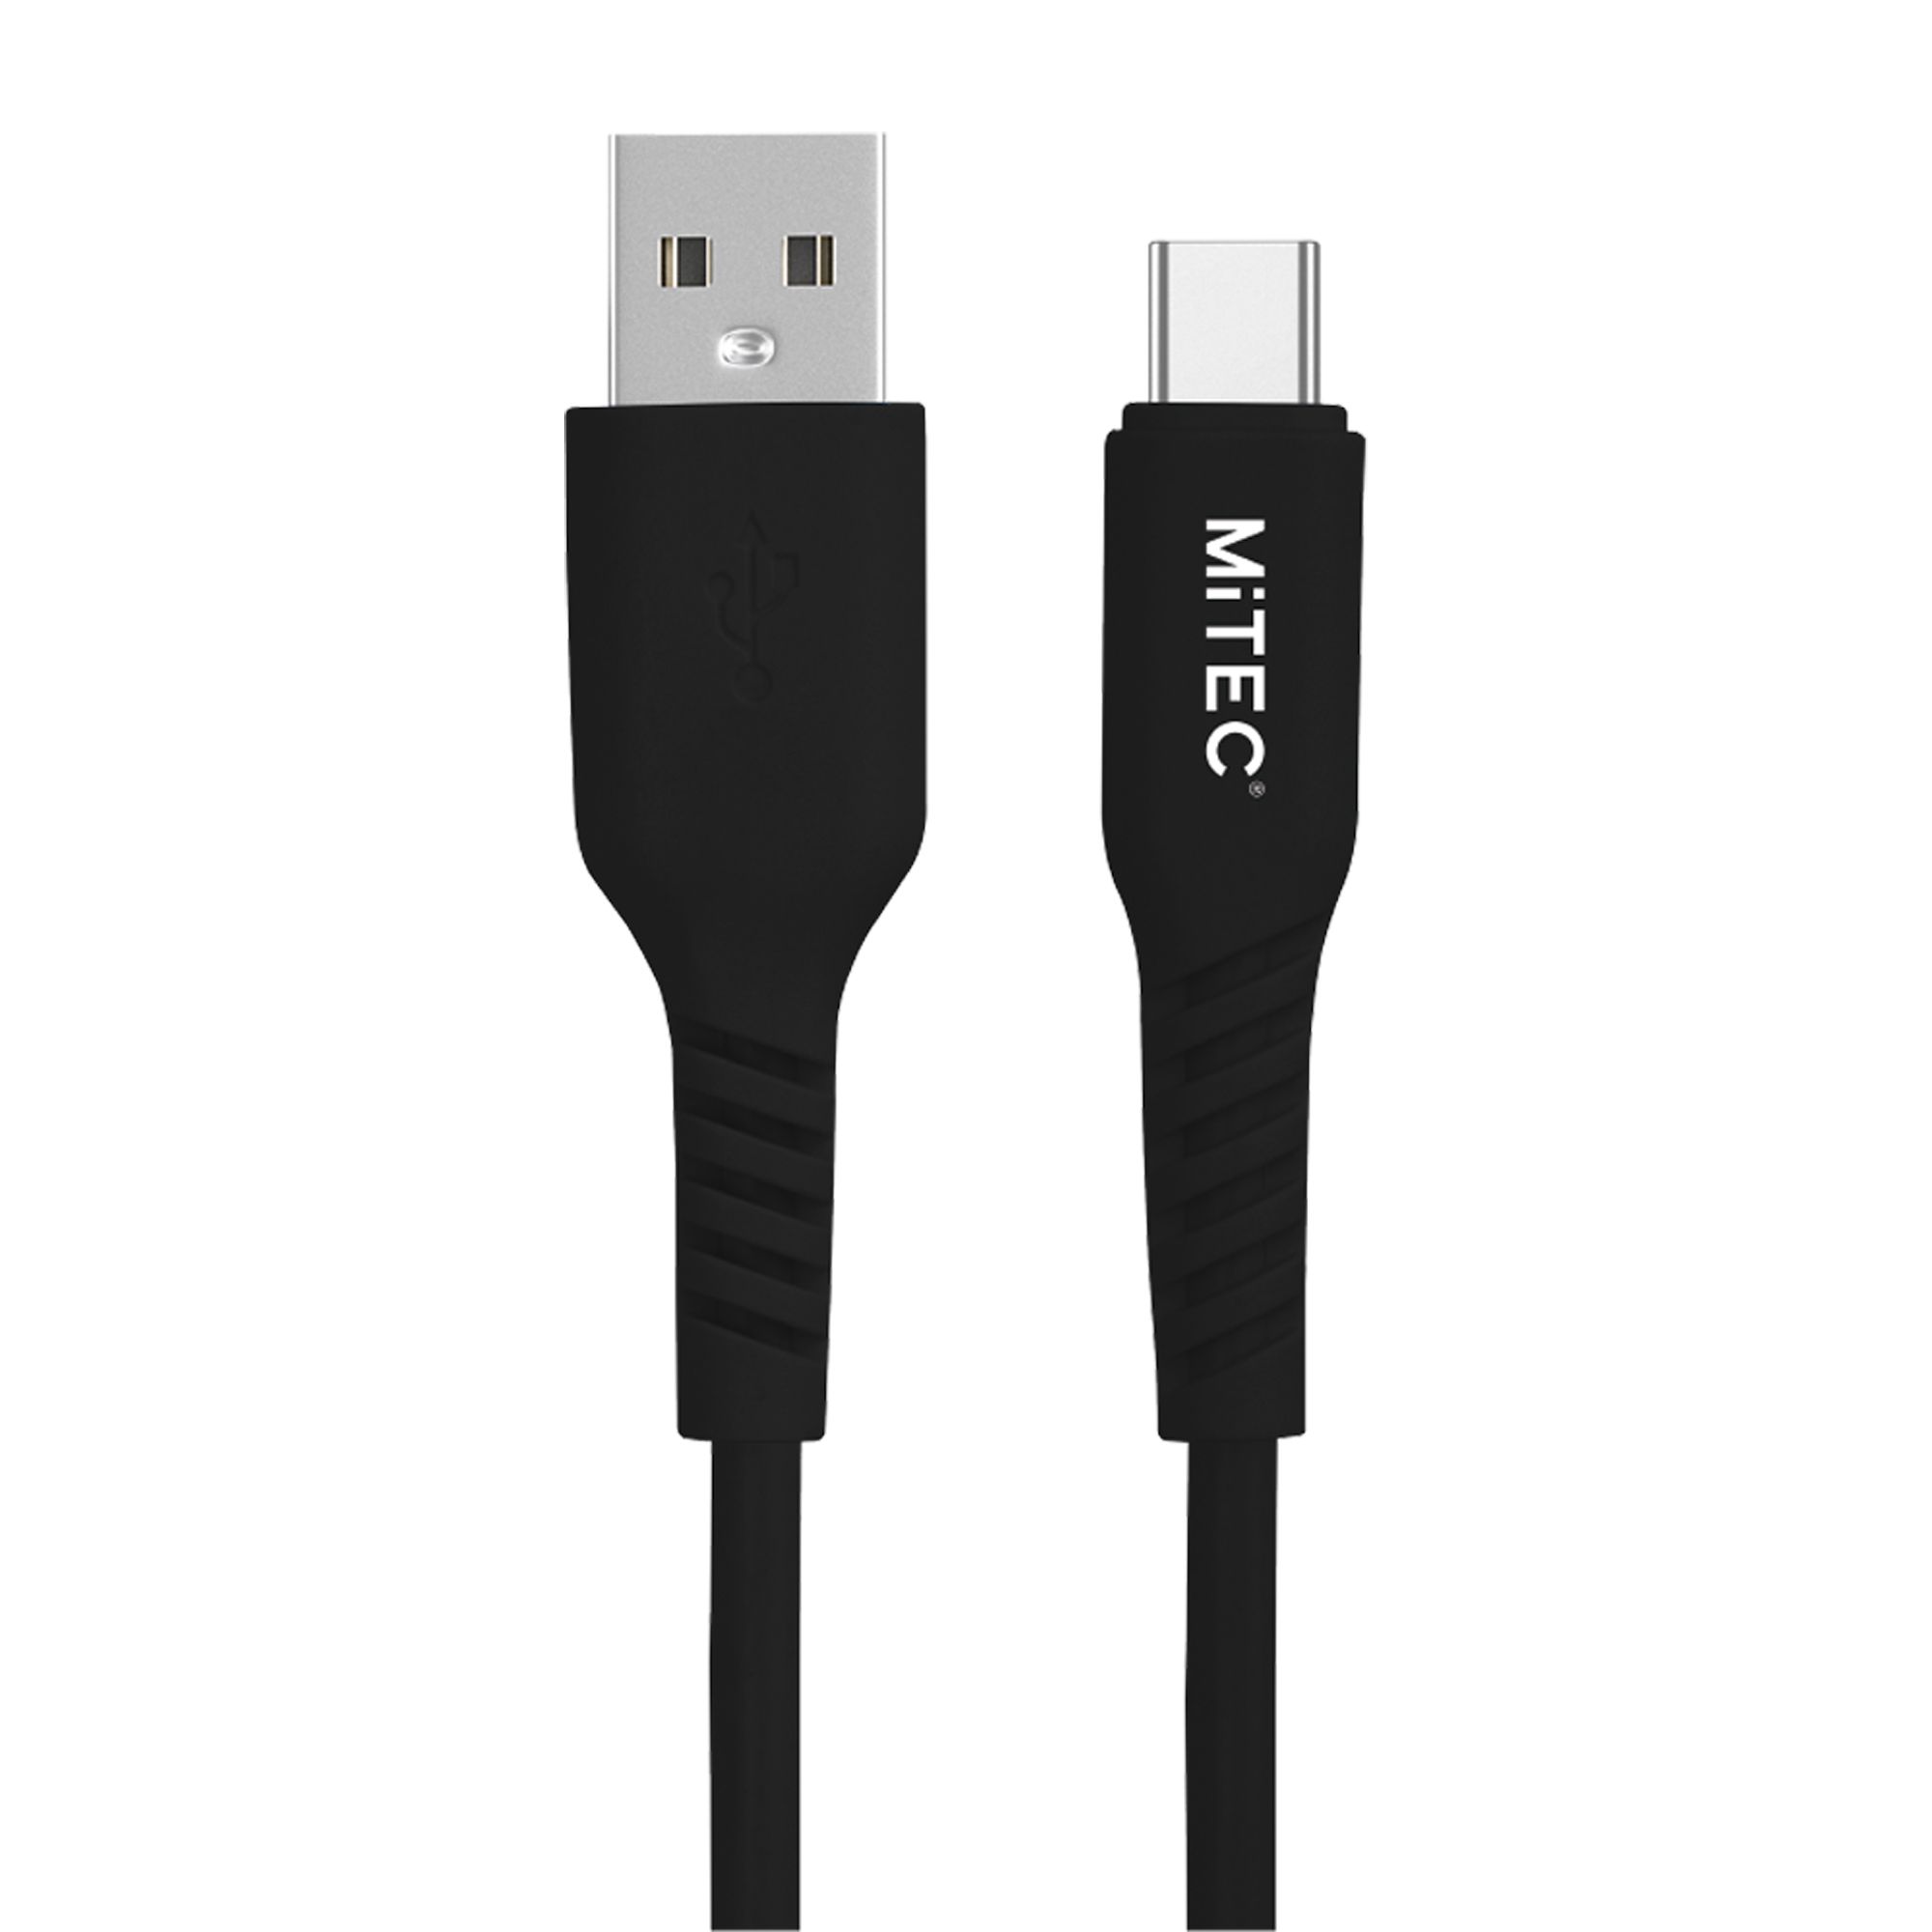 MiTEC USB A - USB C Non-biodegradable Charging cable, 2m, Black